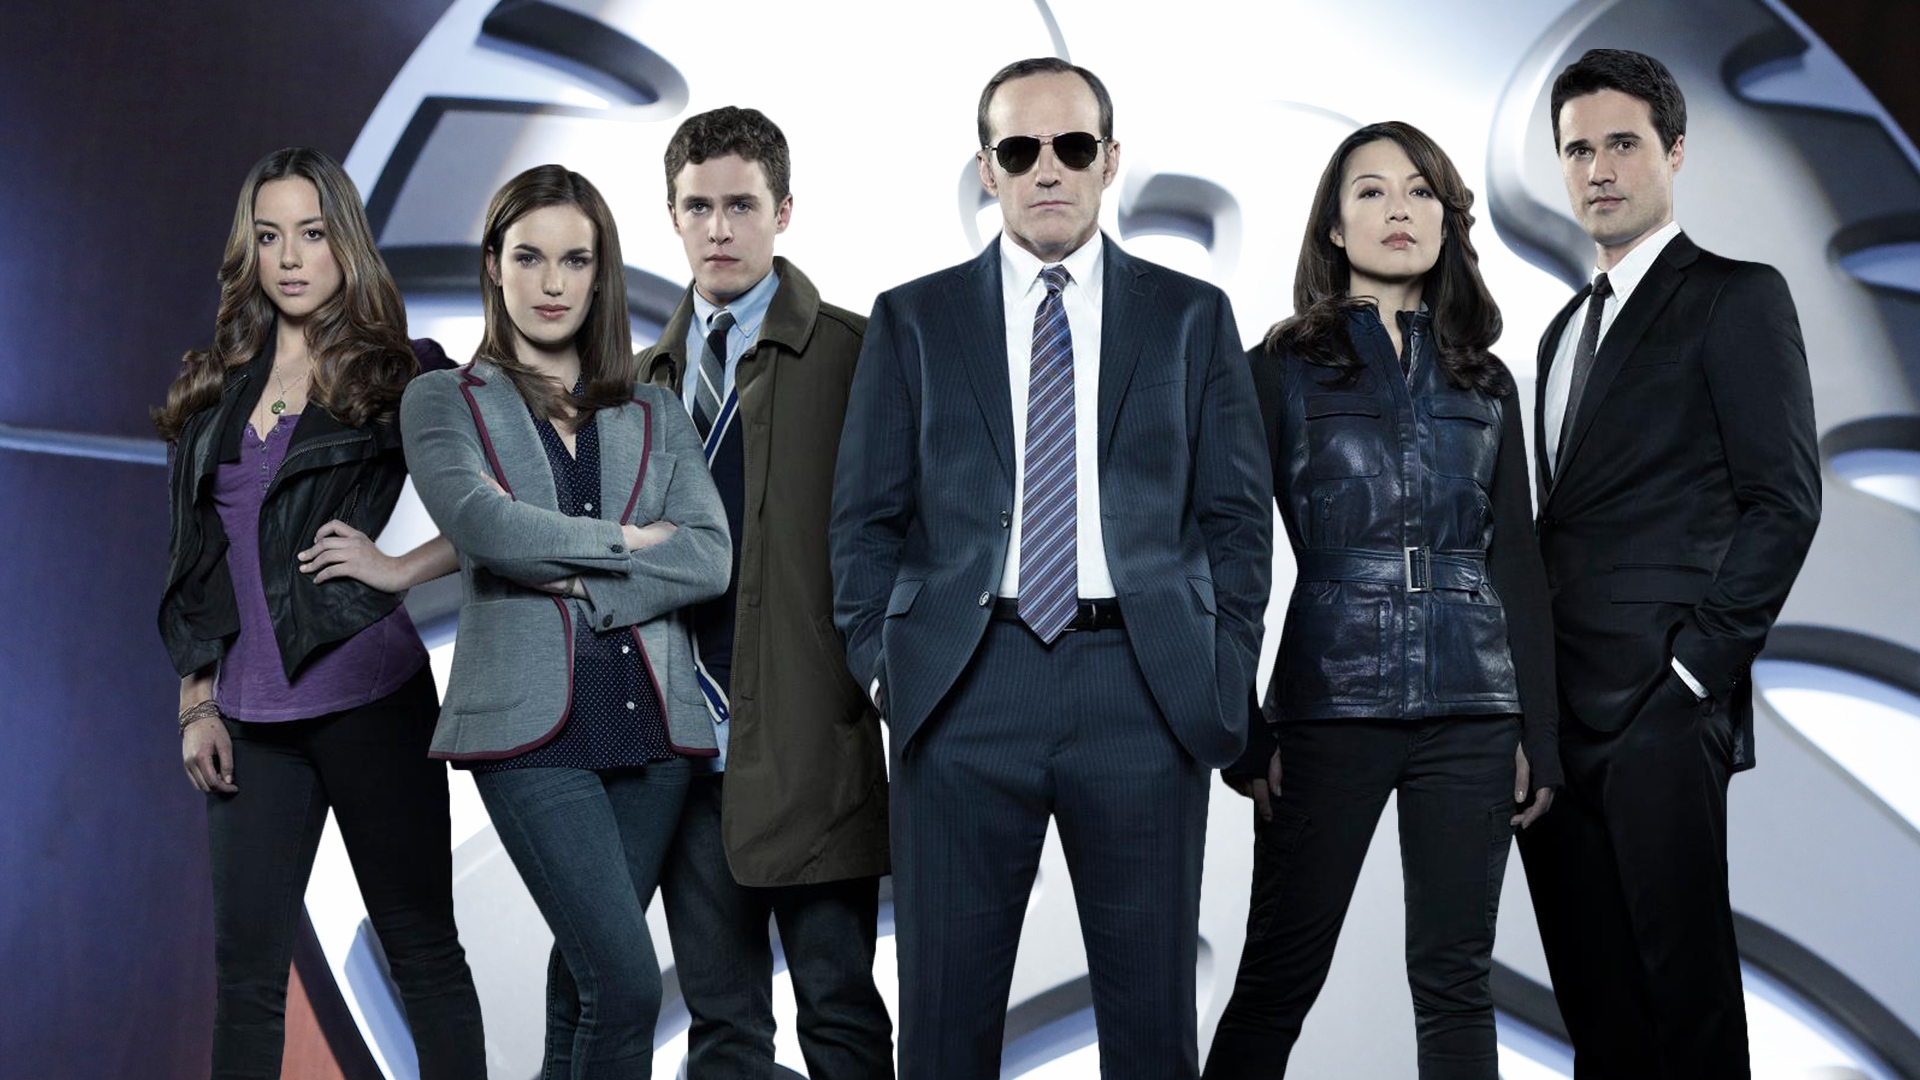 Il cast della serie tv "Agents of S.H.I.E.L.D."